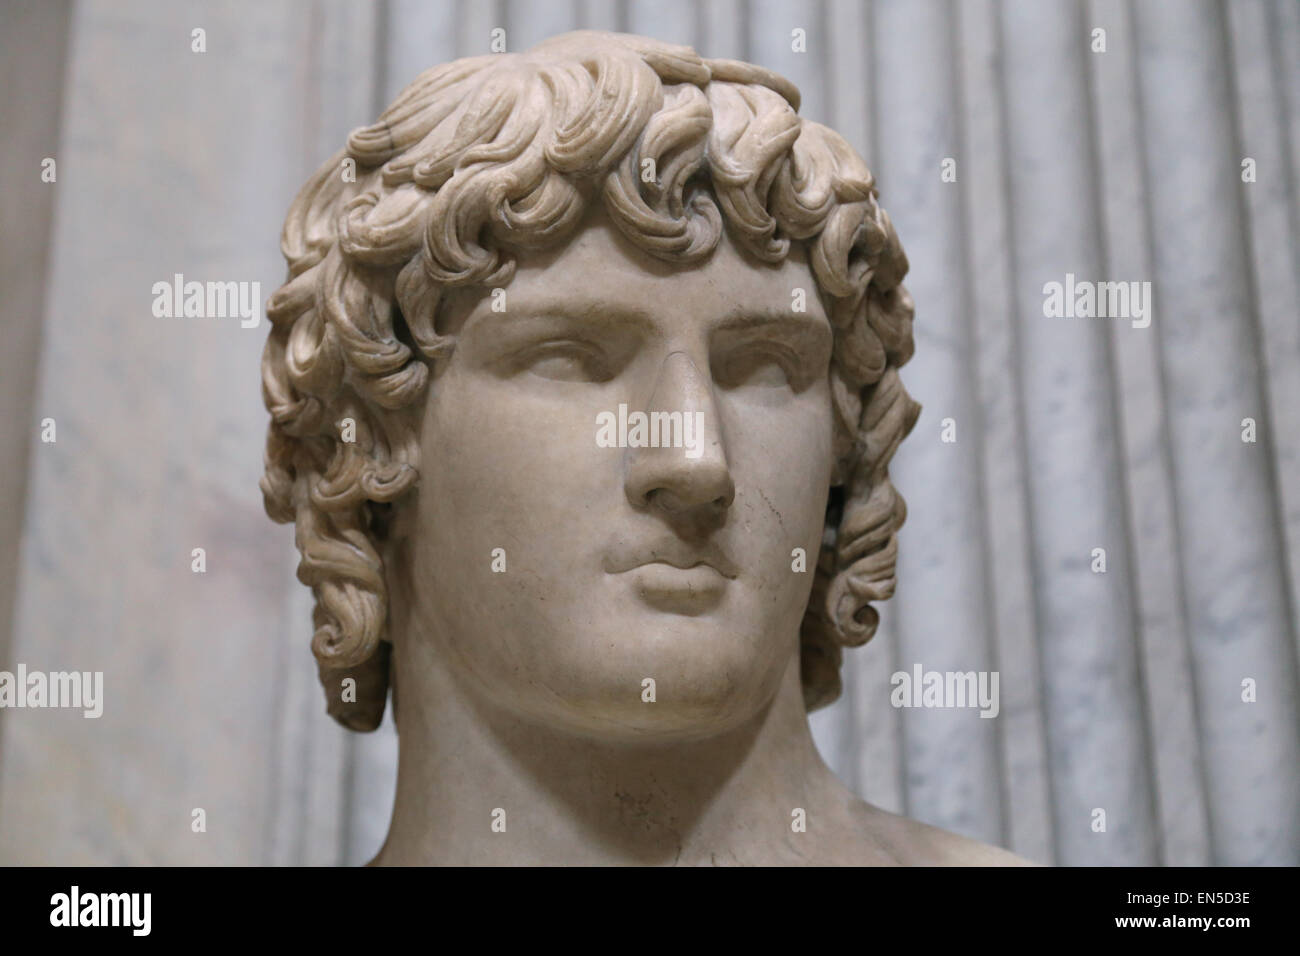 Antinoos (111-130). Bithynian griechischen Jugend und ein Favorit oder Liebhaber des Kaisers Hadrian. In Hadrians Villa gefunden. 2. c. Stockfoto